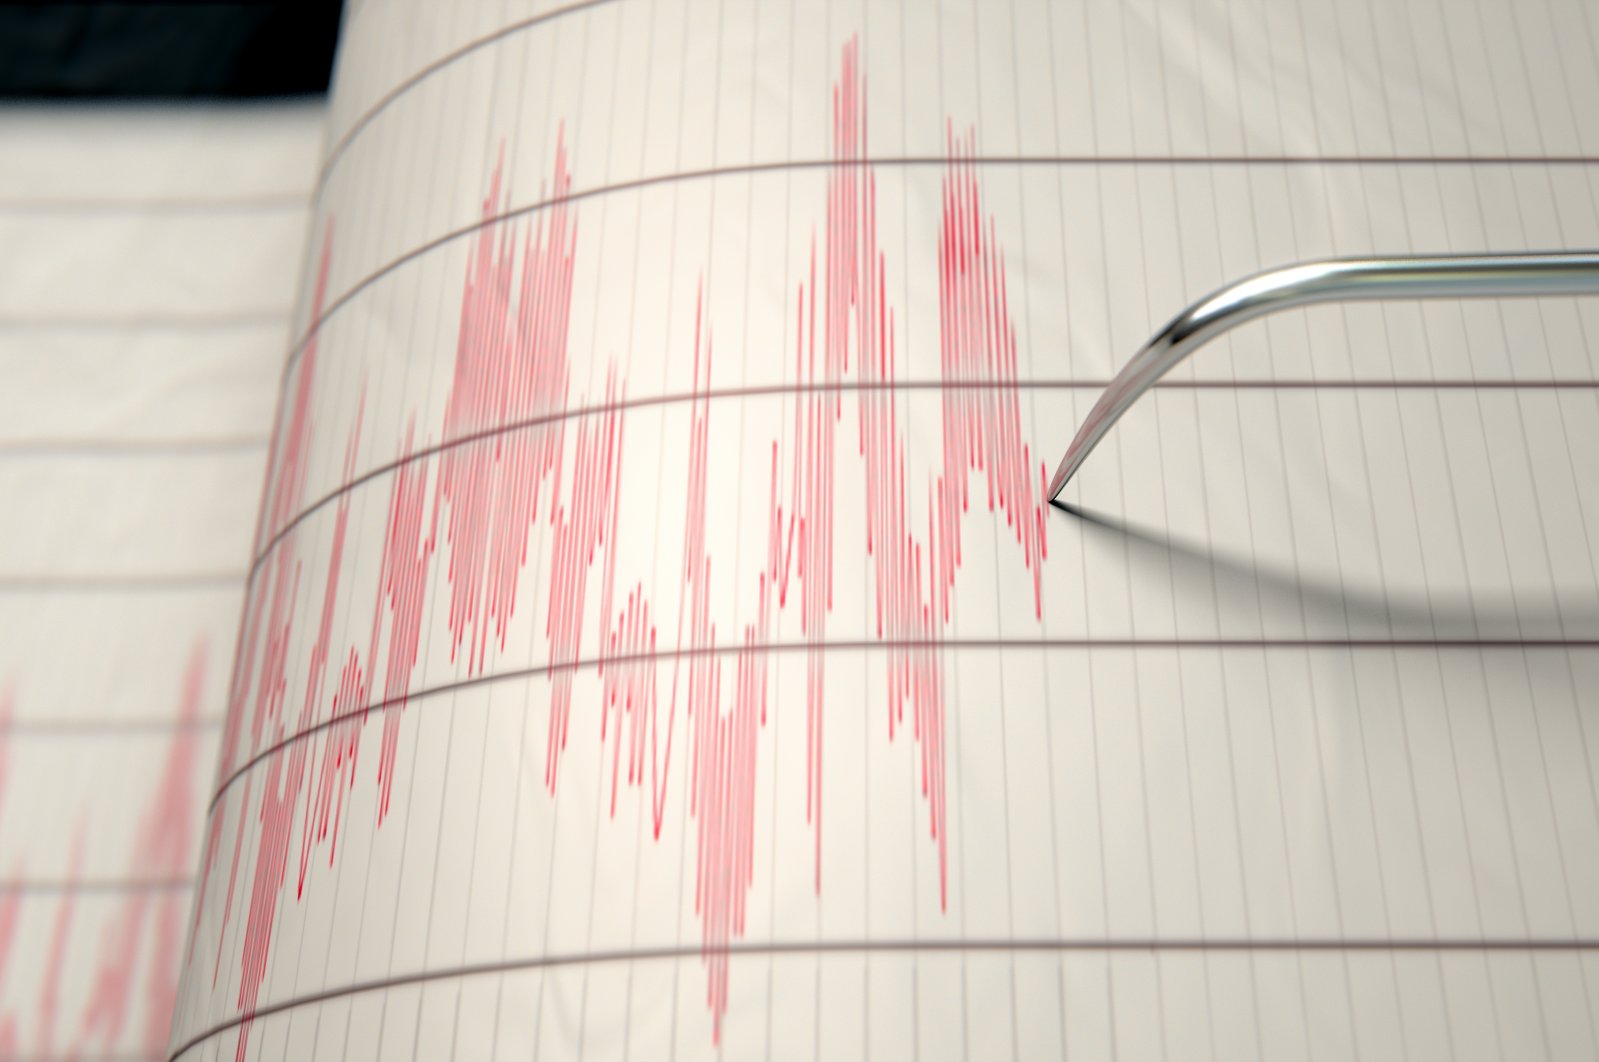 Strong magnitude 5.4 earthquake shakes Azerbaijan